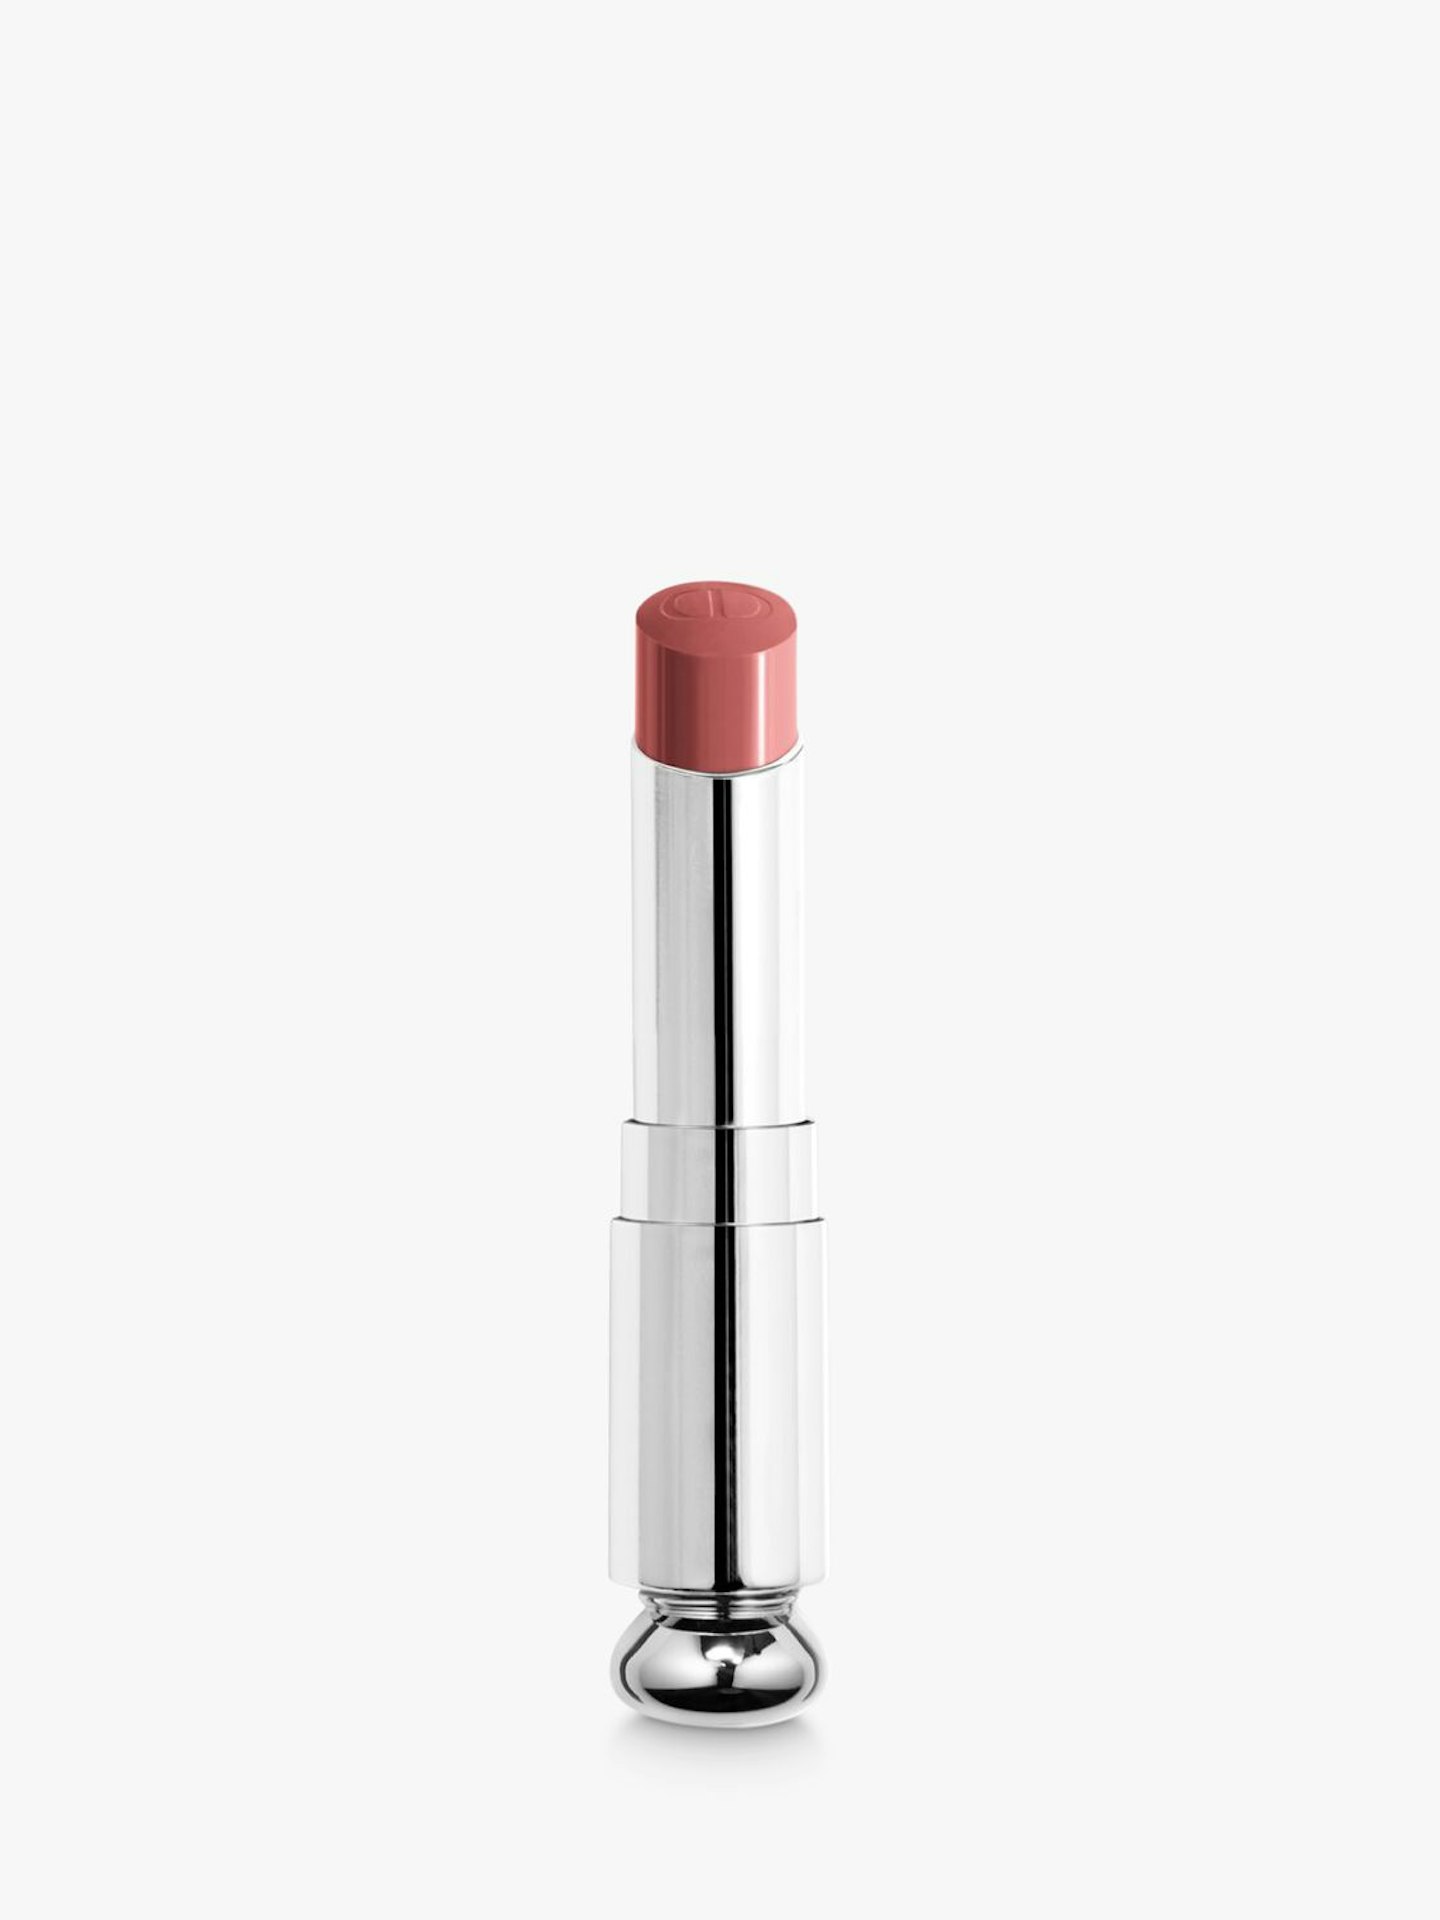 Dior Addict Shine Lipstick Refill, £26.50